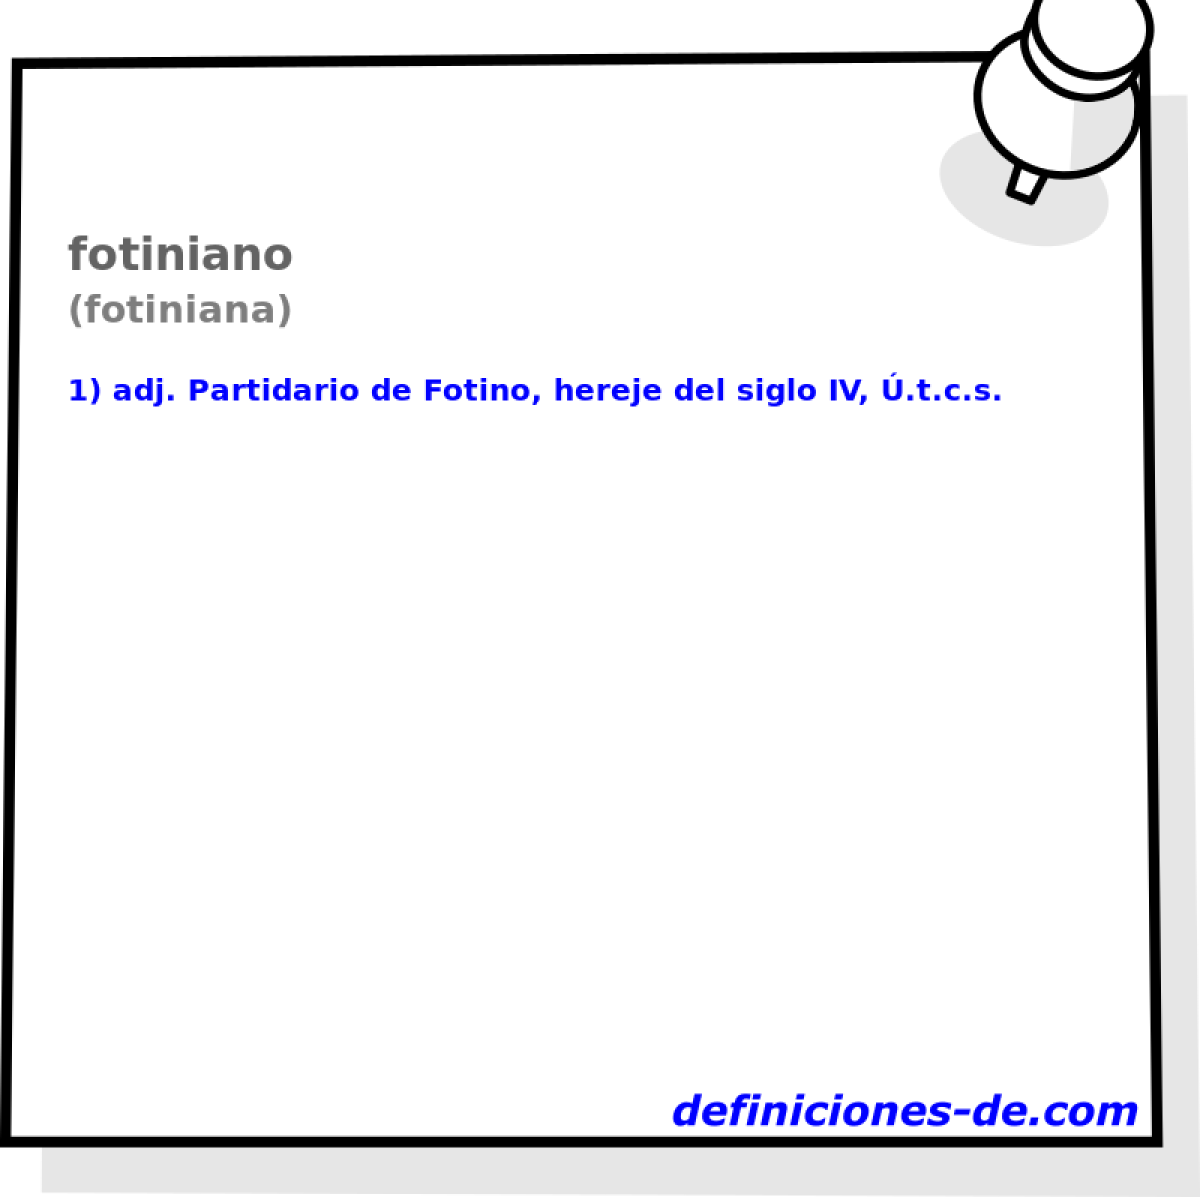 fotiniano (fotiniana)